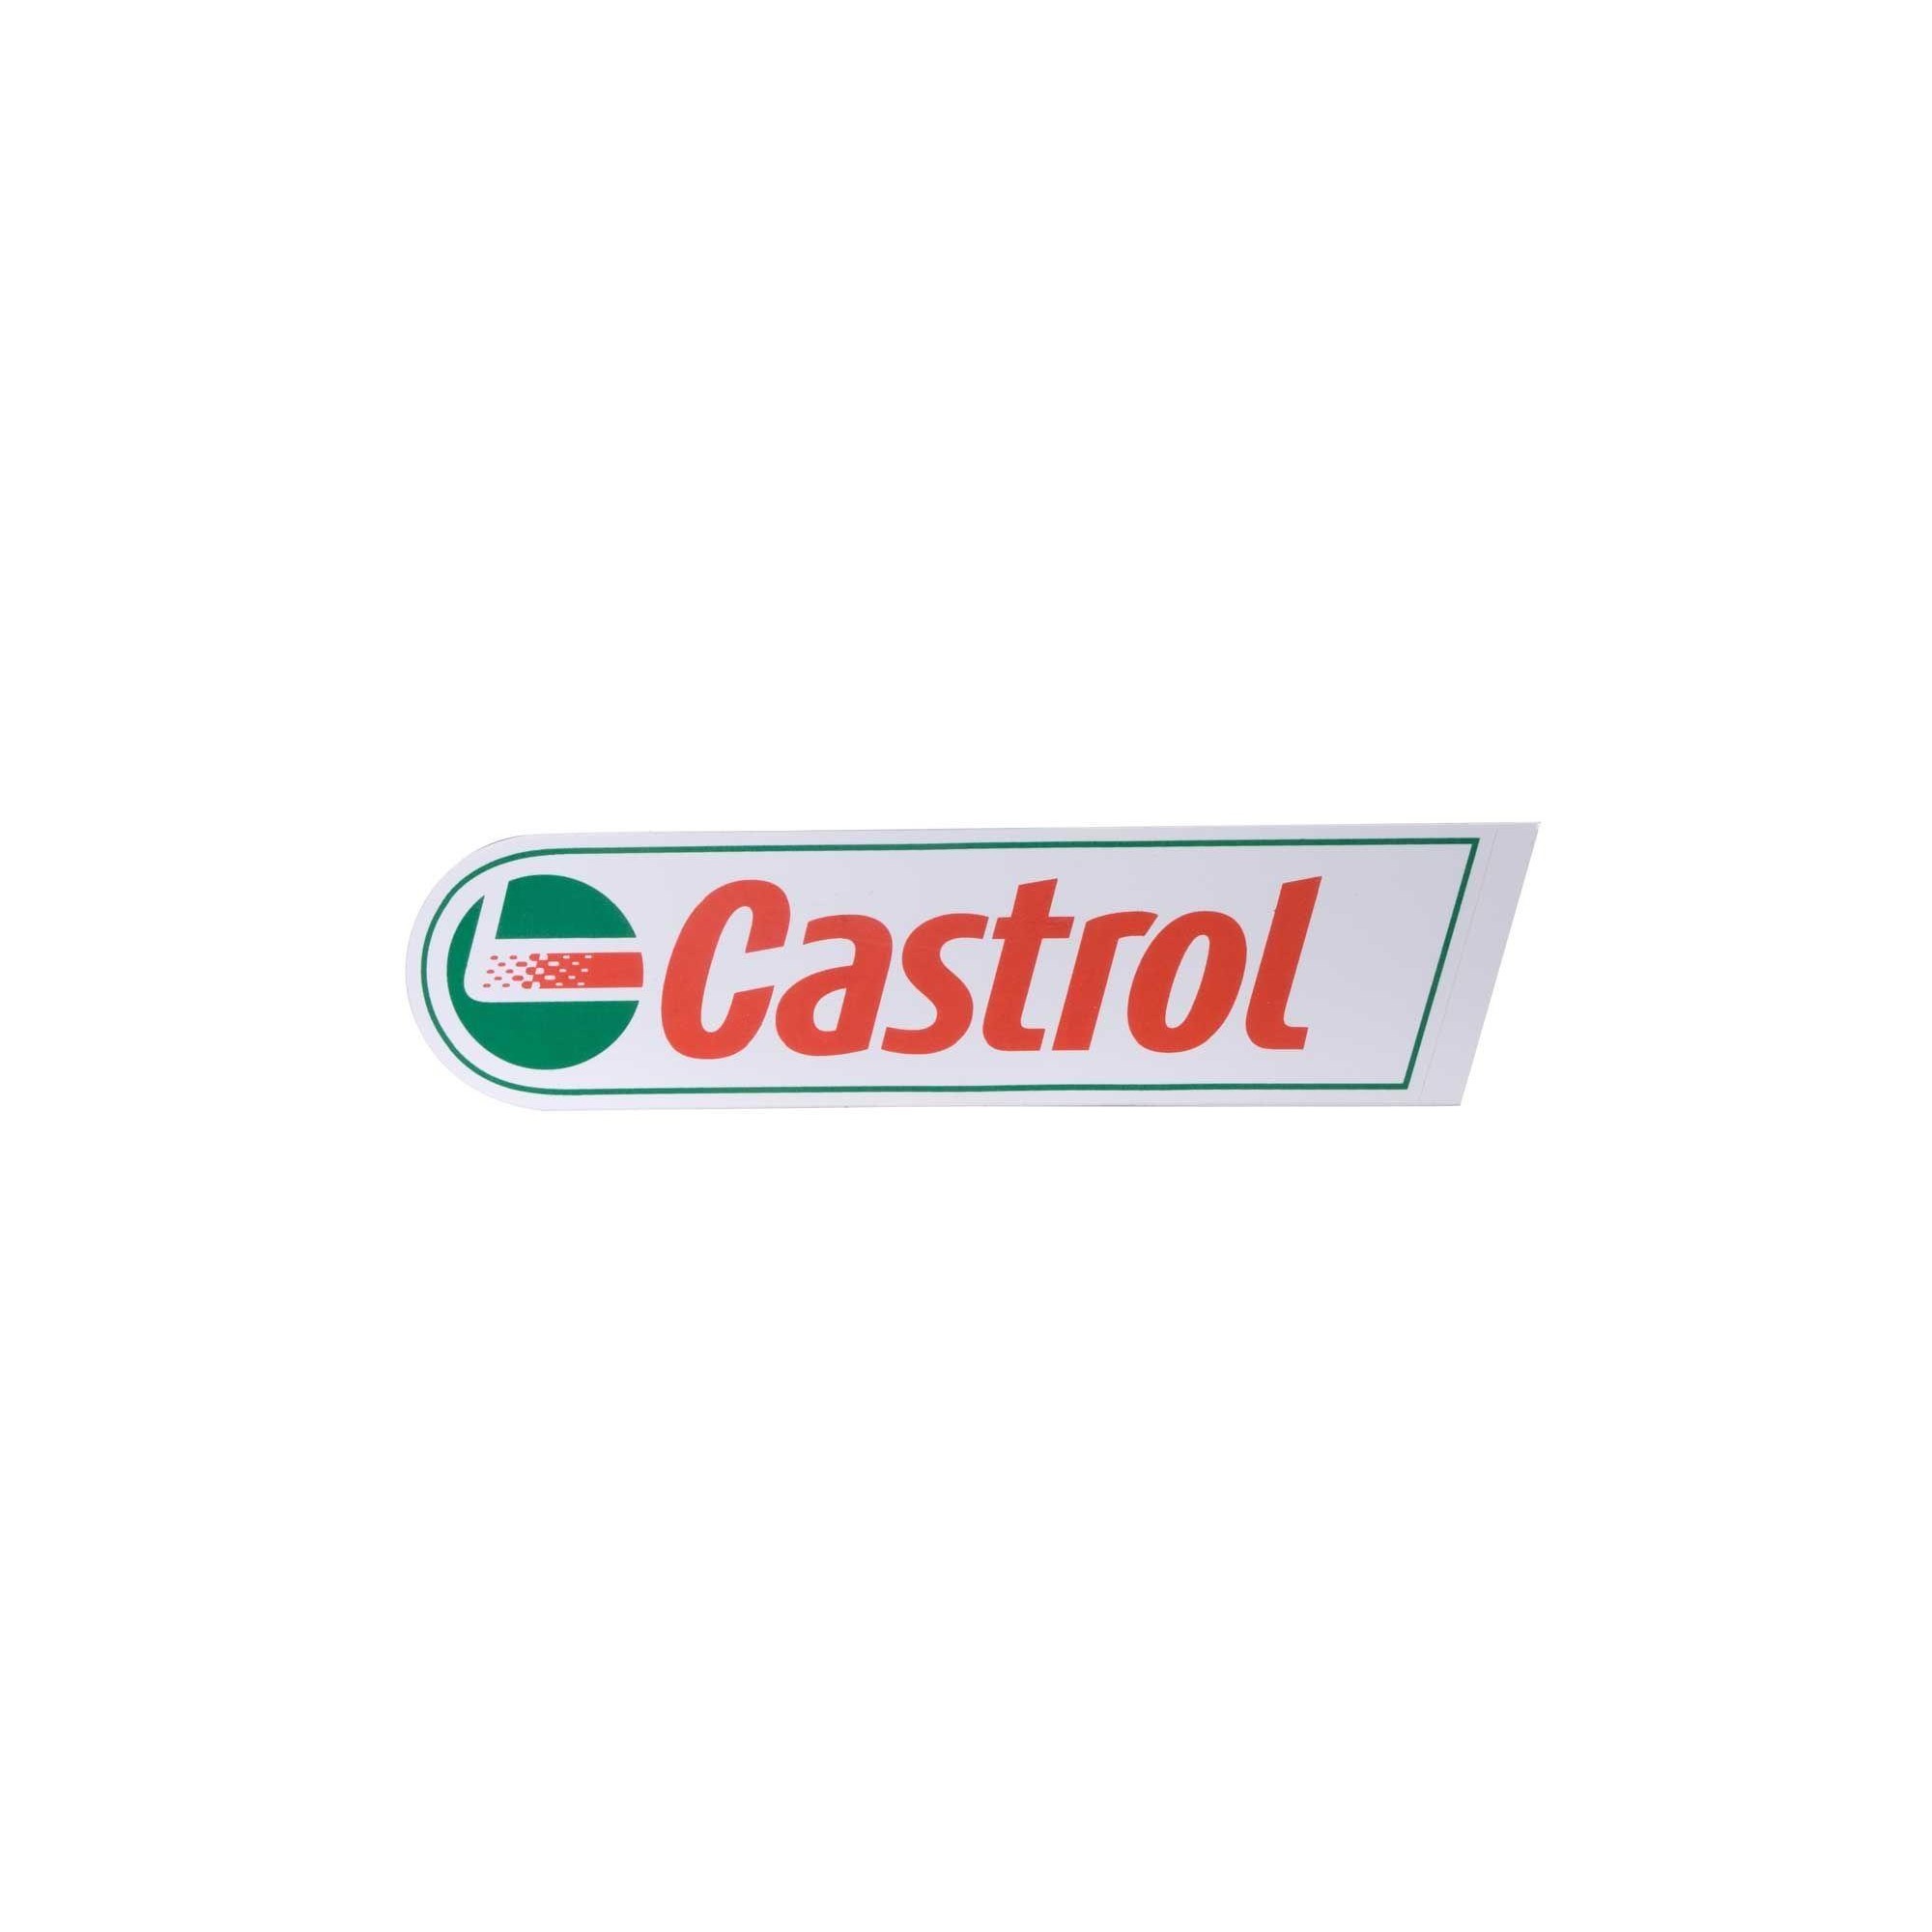 Castrol- Naklejka dla motocyklisty 15x4 cm :: moto-akcesoria.pl